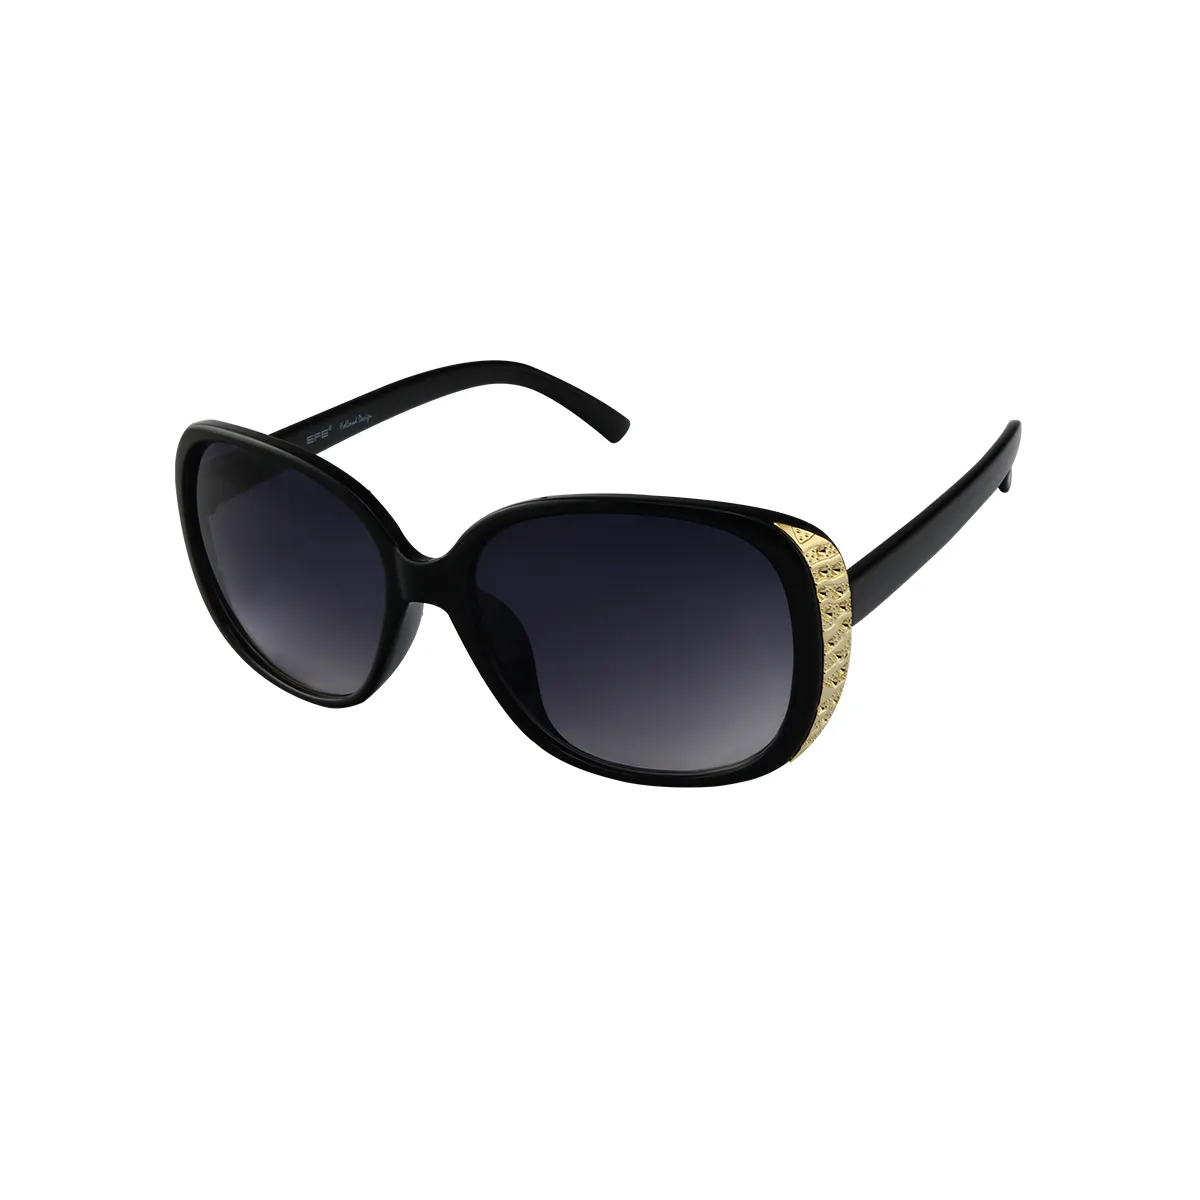 Yvette - Oval Black Sunglasses for Women